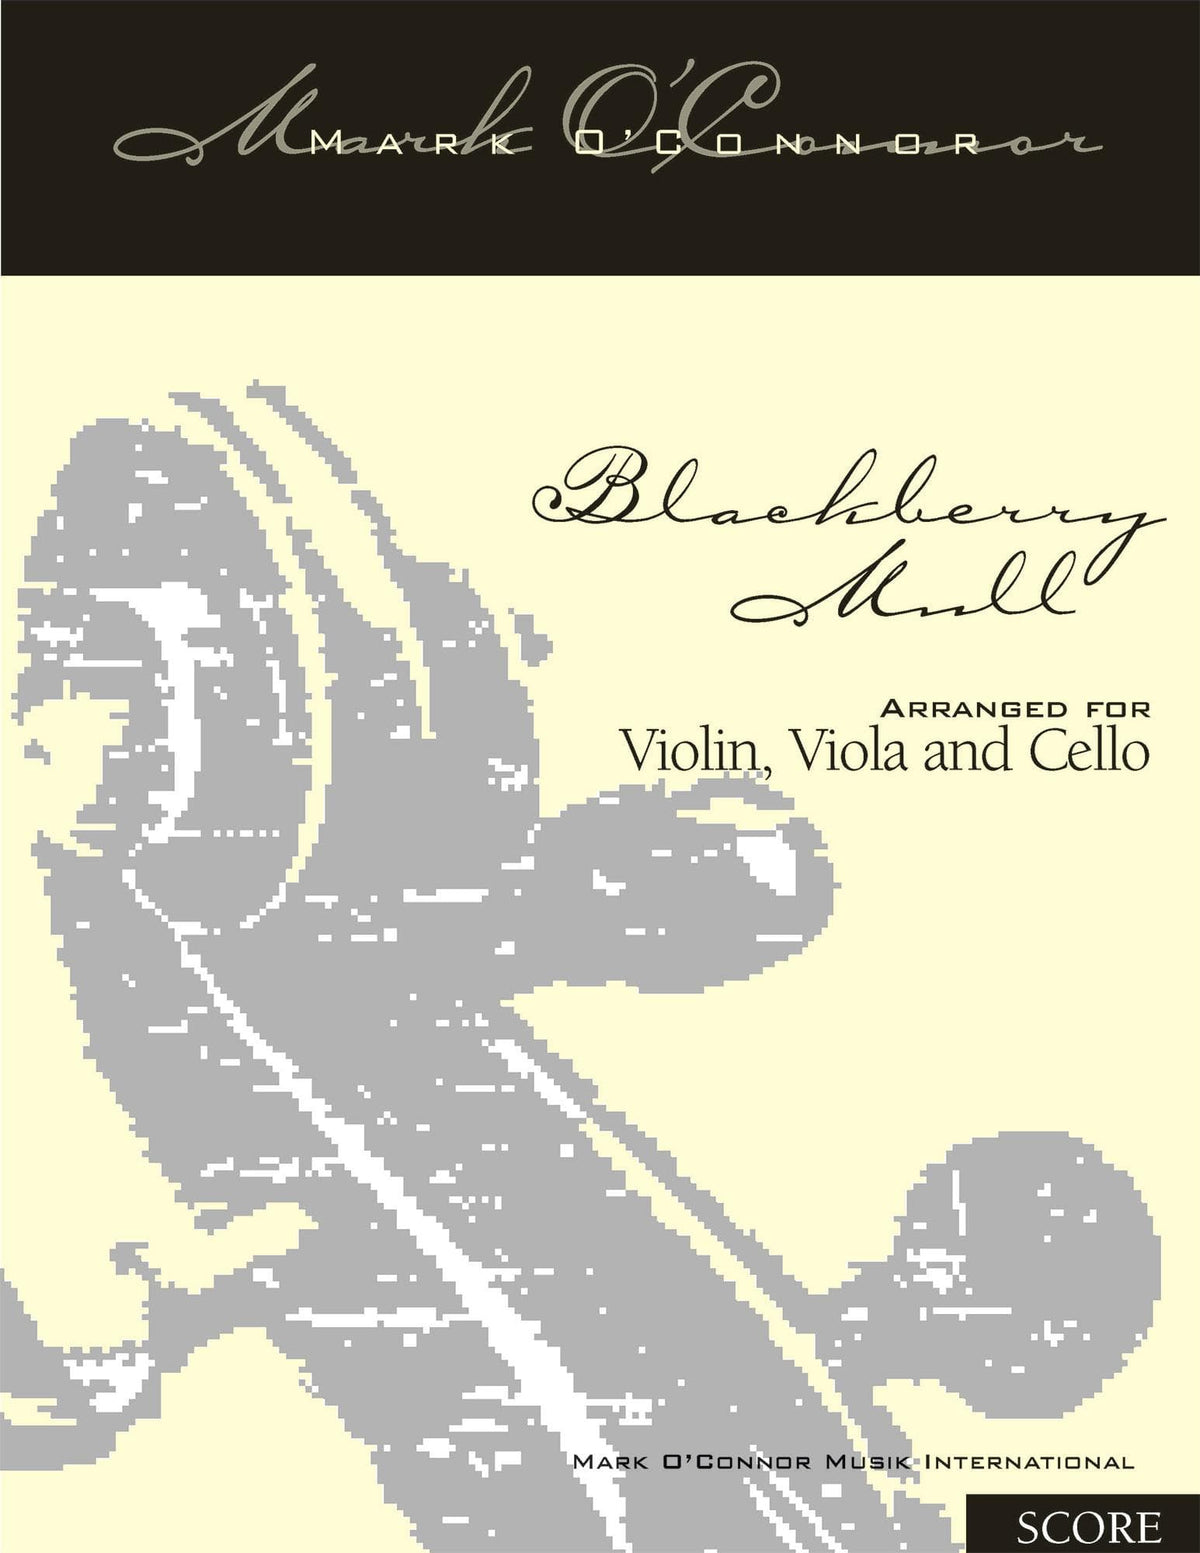 O'Connor, Mark - Blackberry Mull for Violin, Viola, and Cello - Score - Digital Download